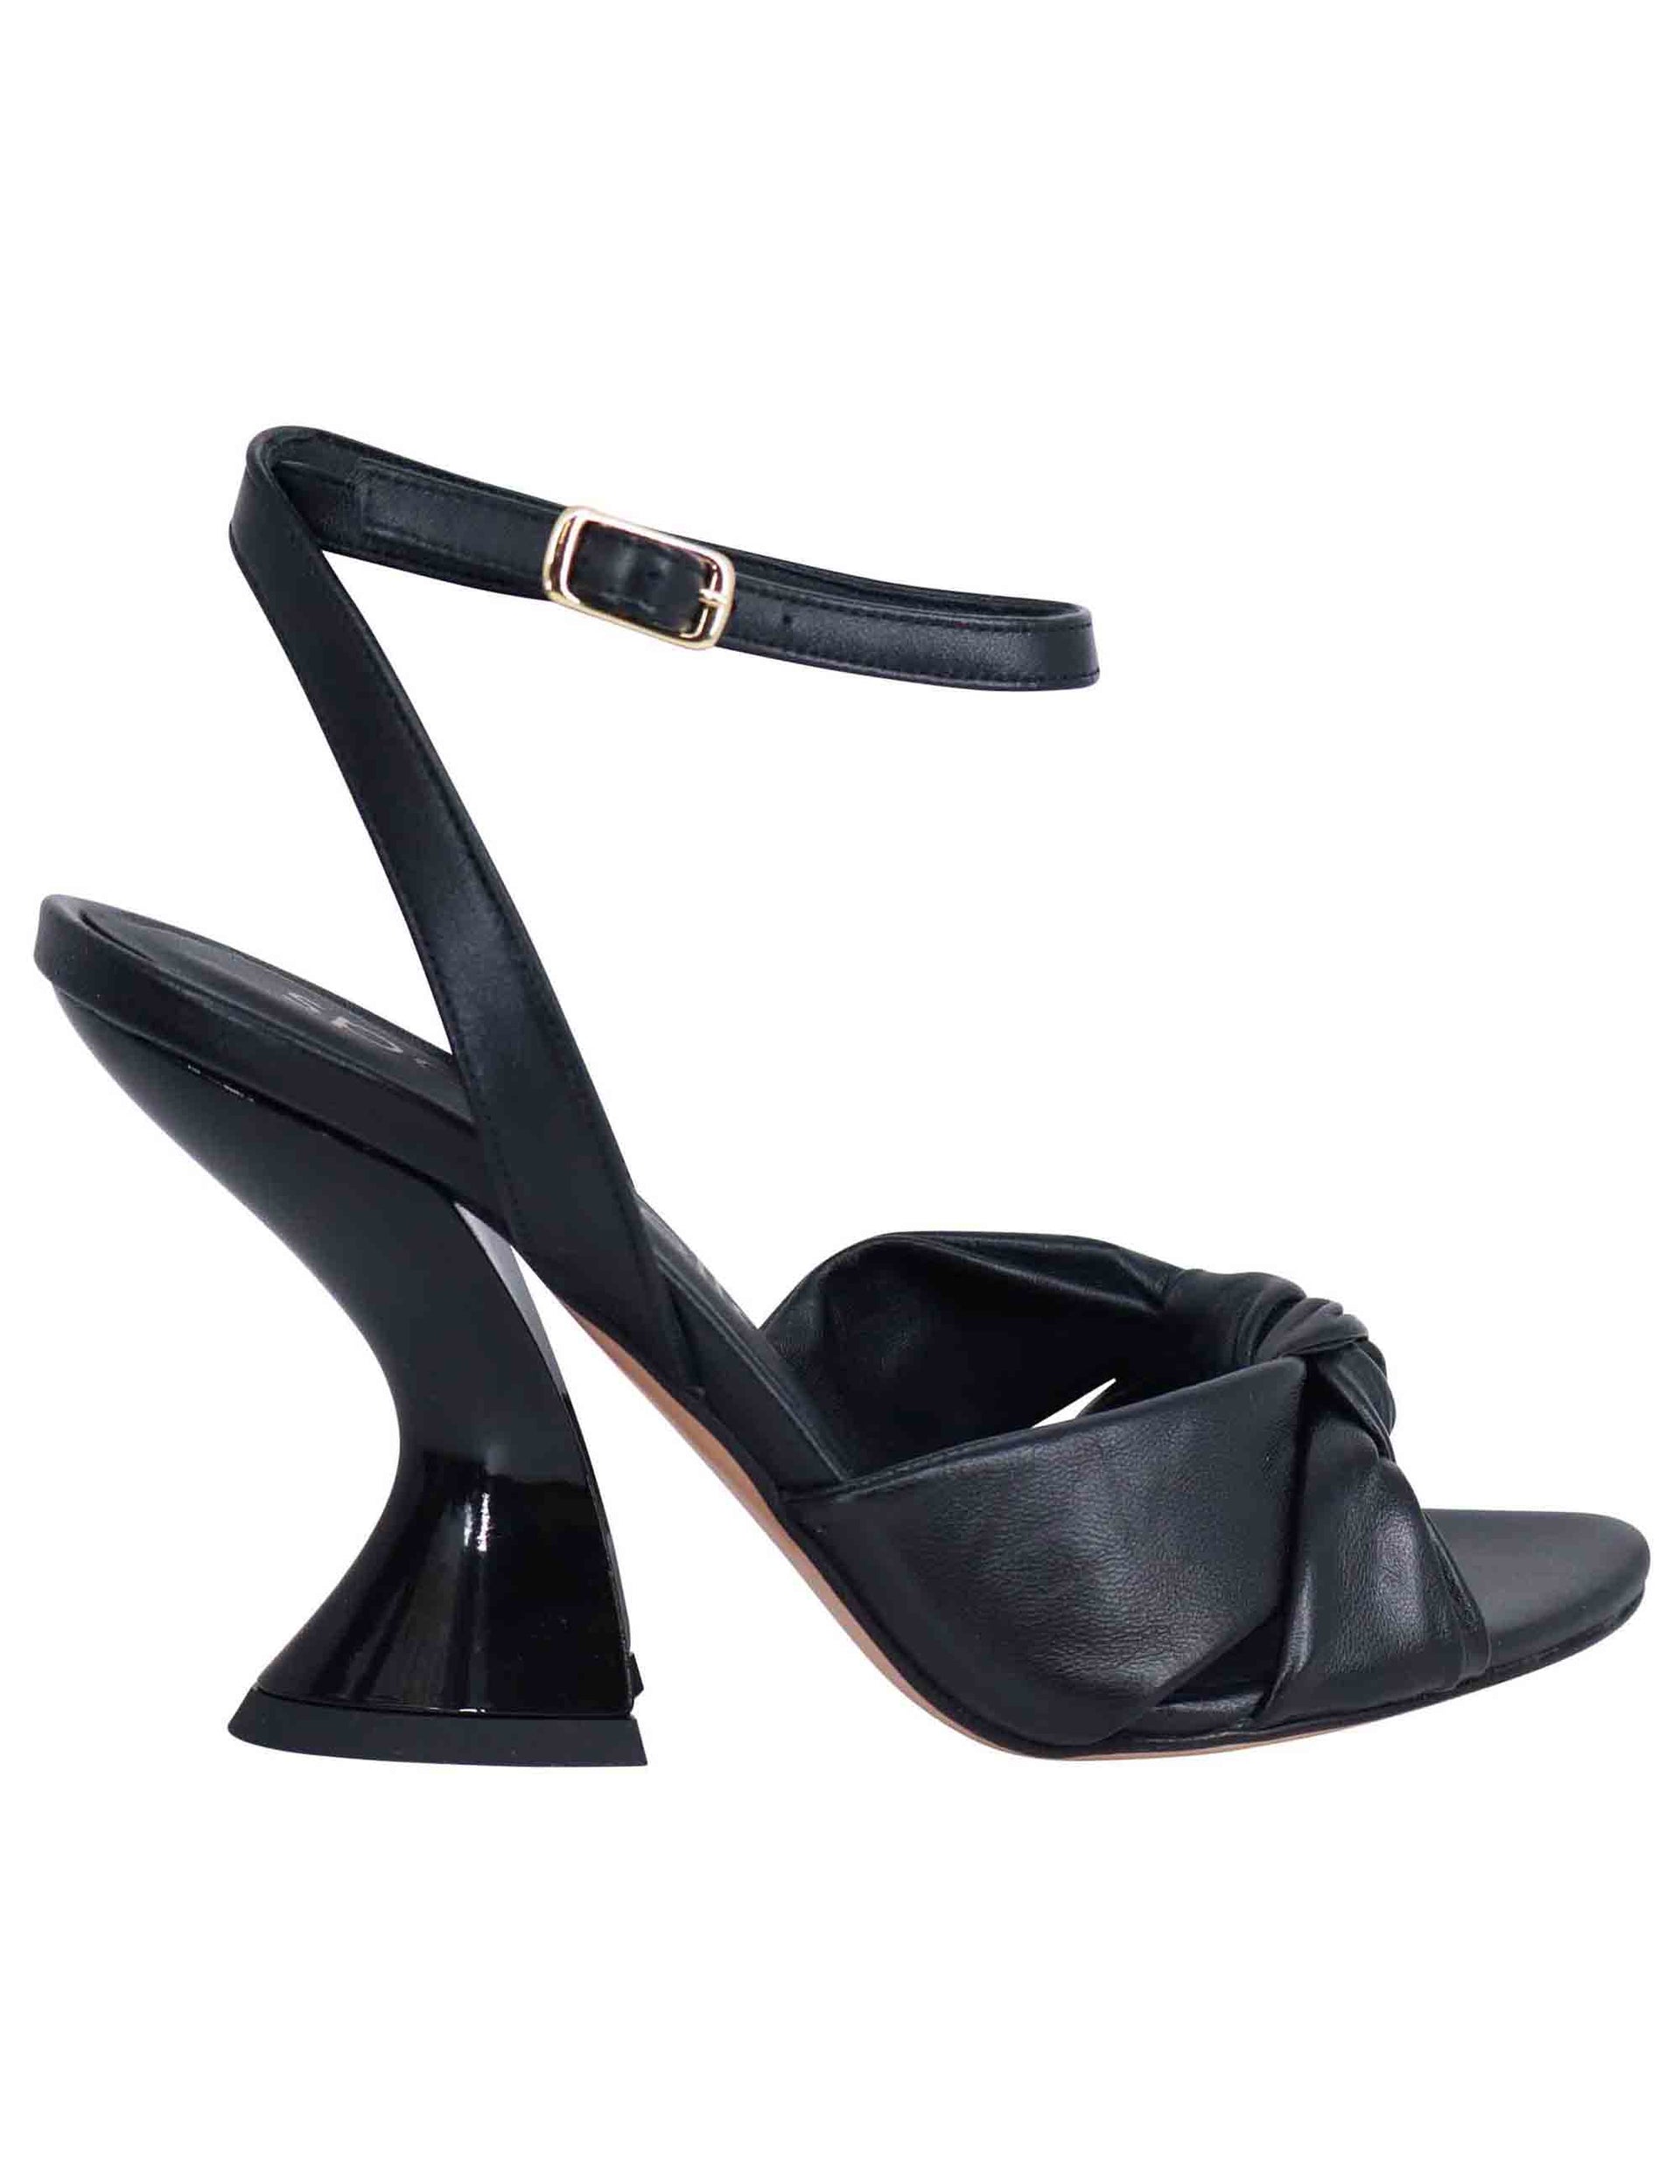 Sandali donna in pelle nera con tacco alto e cinturino alla caviglia